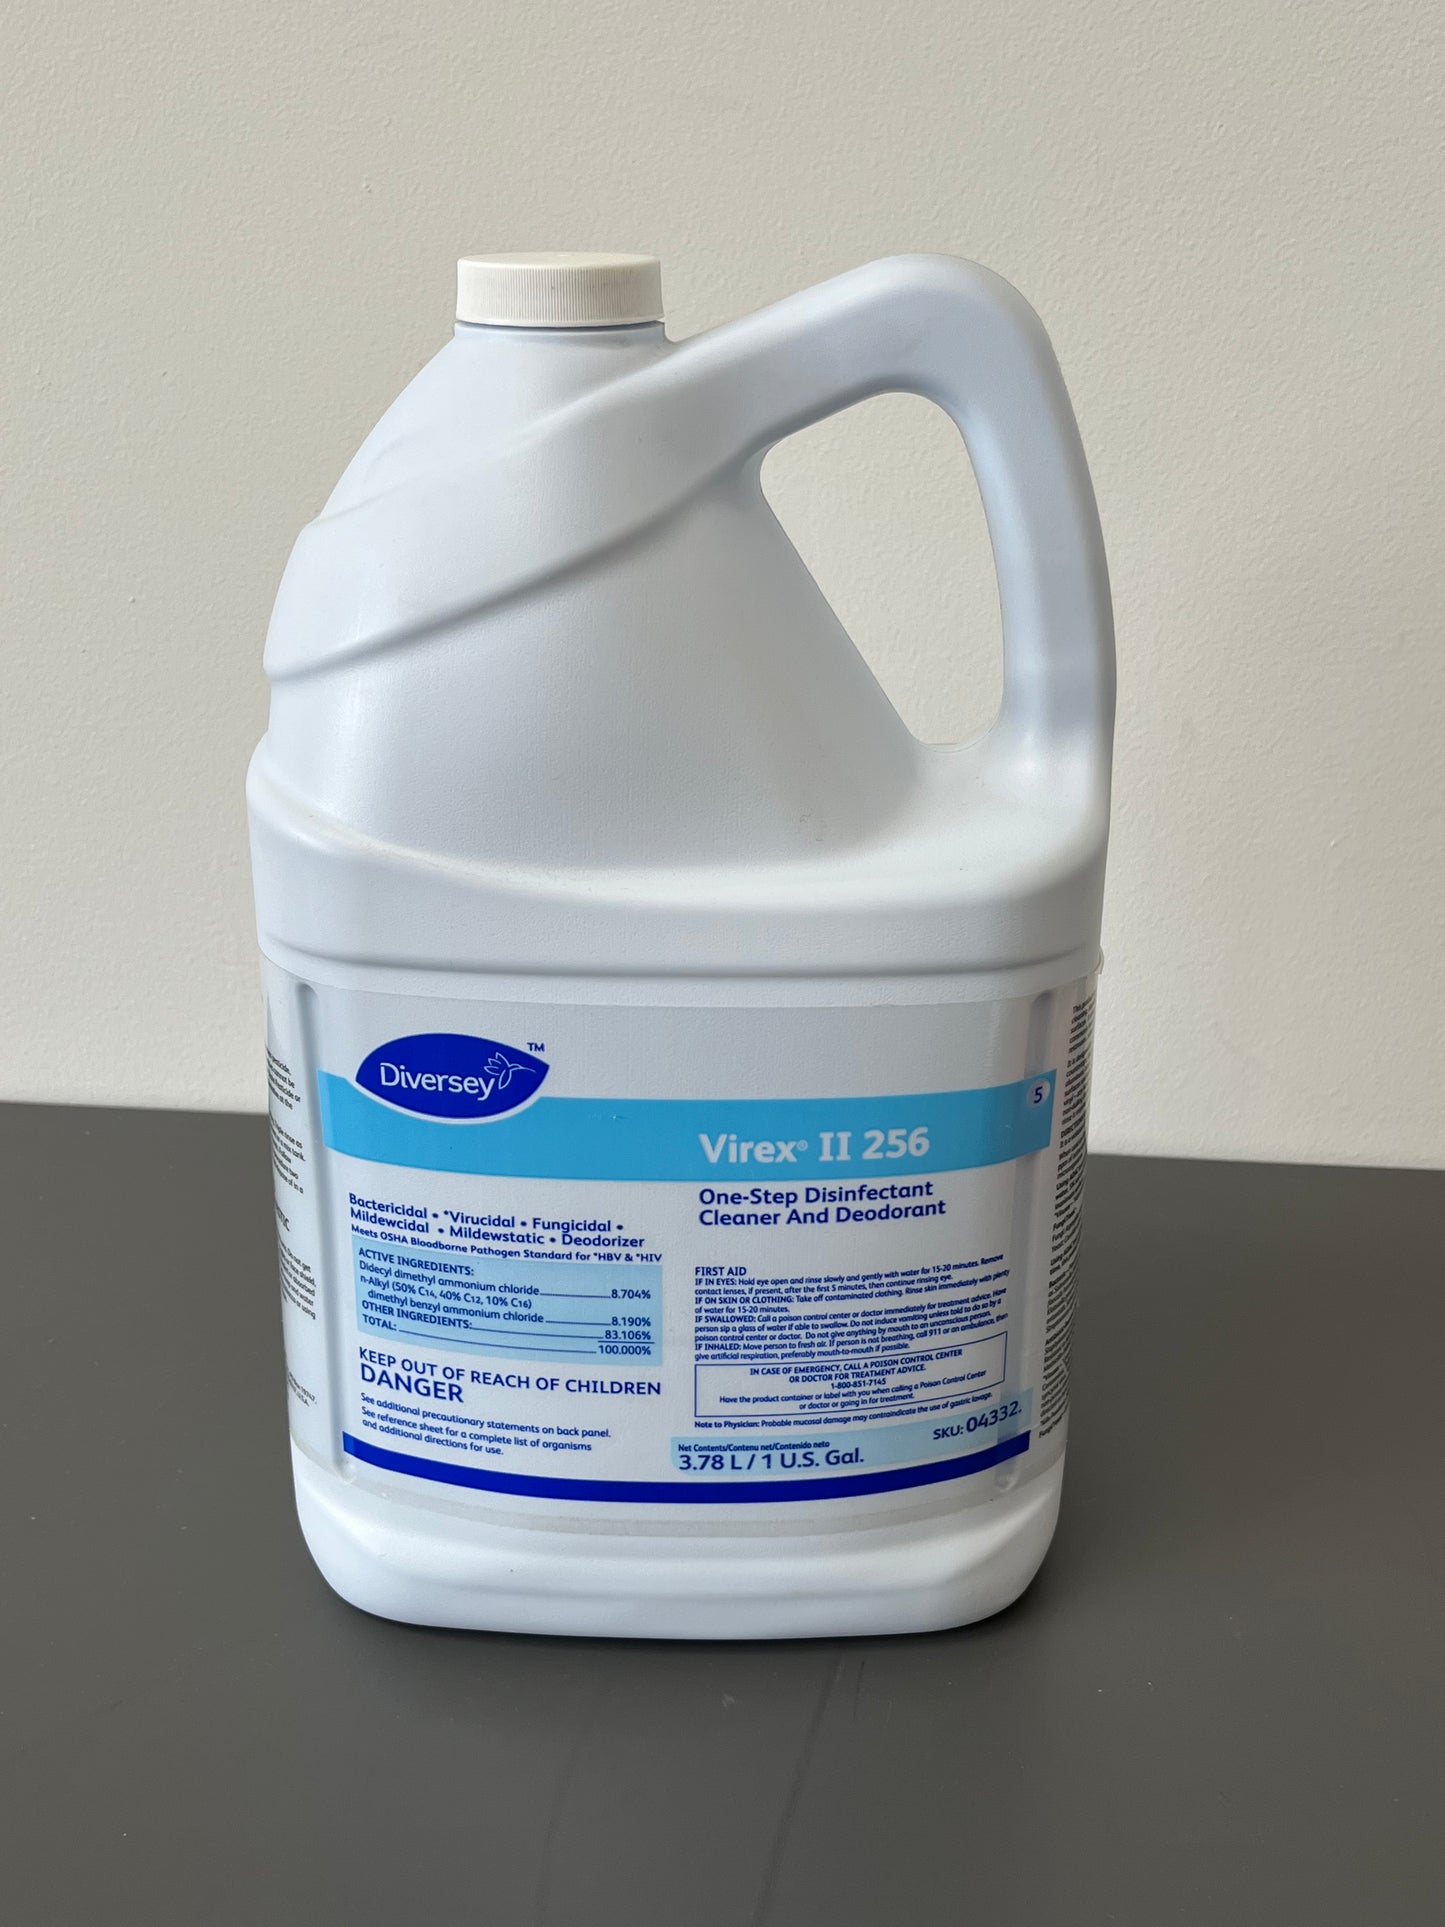 Virex Disinfectant Cleaner & Deodorant